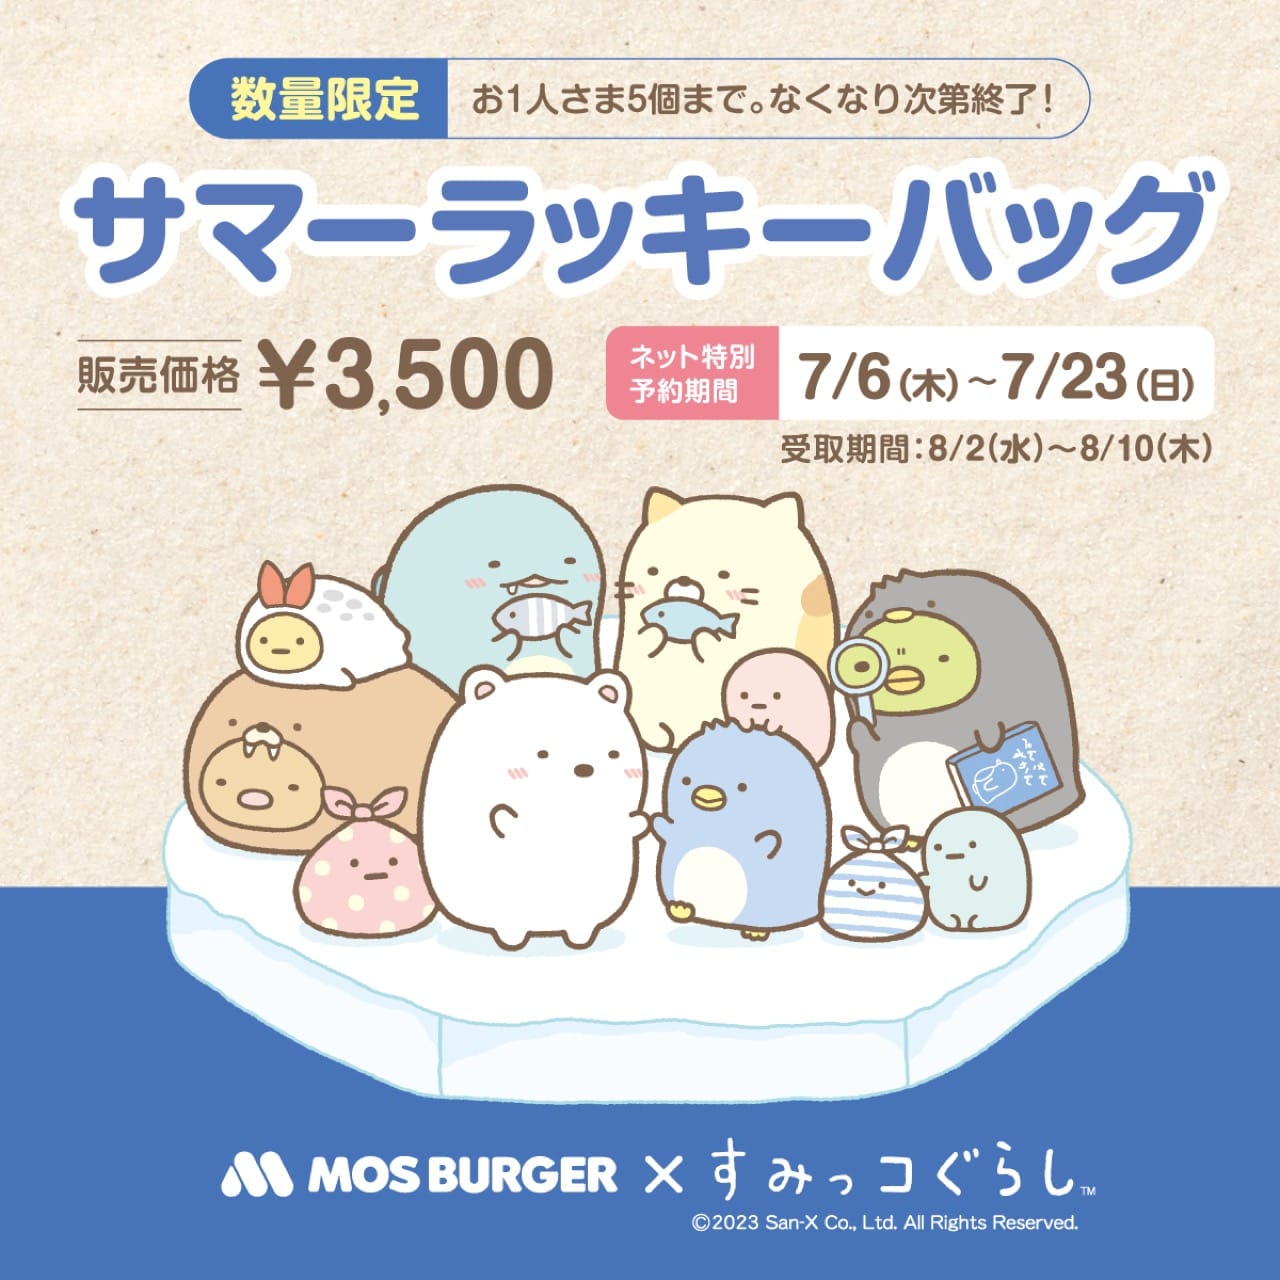 すみっコぐらし × モスバーガー サマー福袋 7月6日よりWeb予約開始!